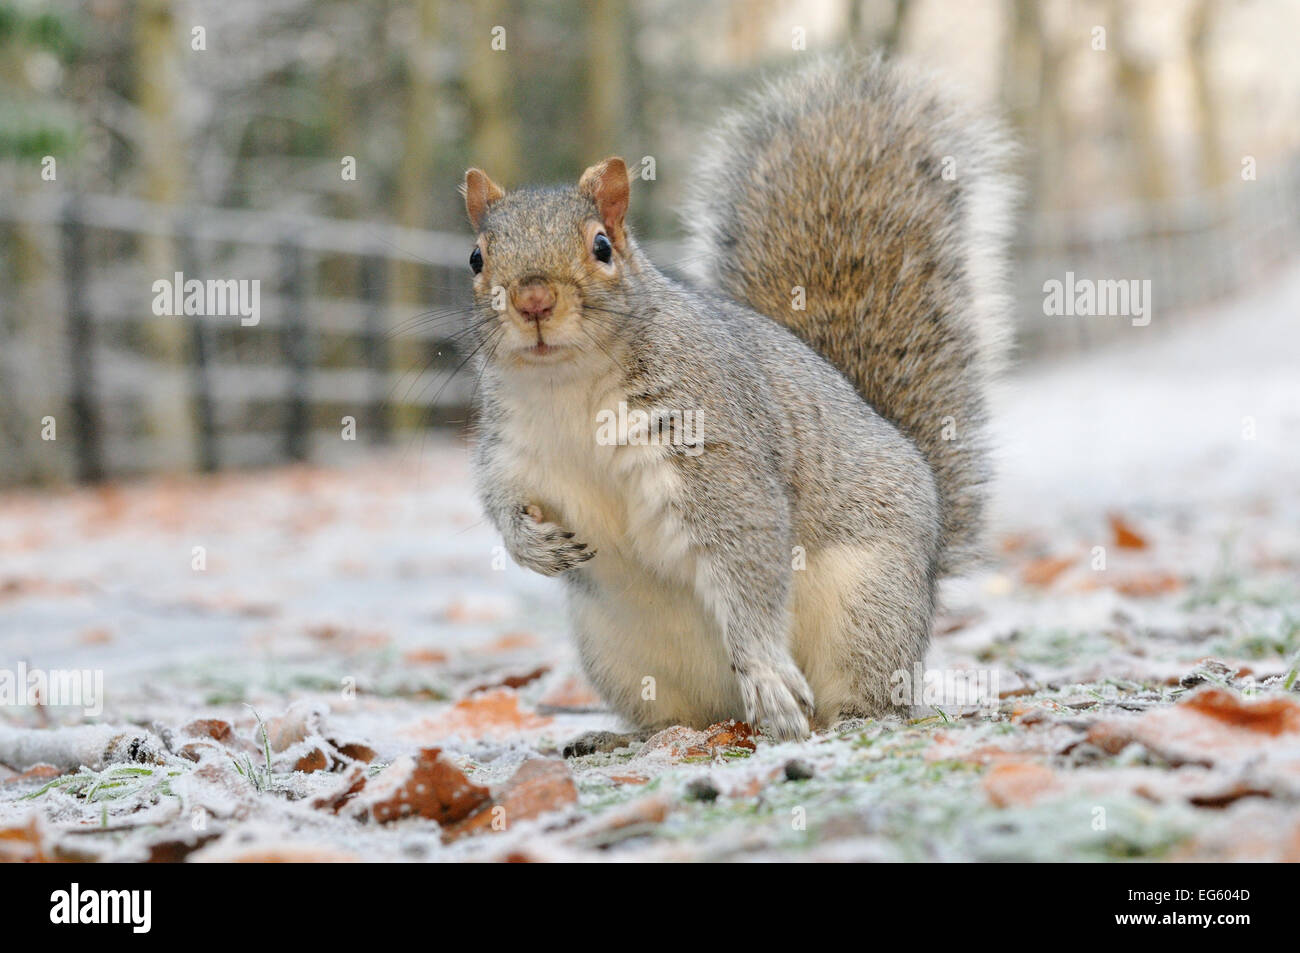 Graue Eichhörnchen (Sciurus carolinensis) im städtischen Park im Winter. Glasgow, Schottland, Dezember. Wussten Sie schon? Wissenschaftler glauben, dass einige der einheimischen Eichhörnchen in Großbritannien gewinnen Immunität gegen die Pocken durch graue Eichhörnchen eingeführt. Stockfoto